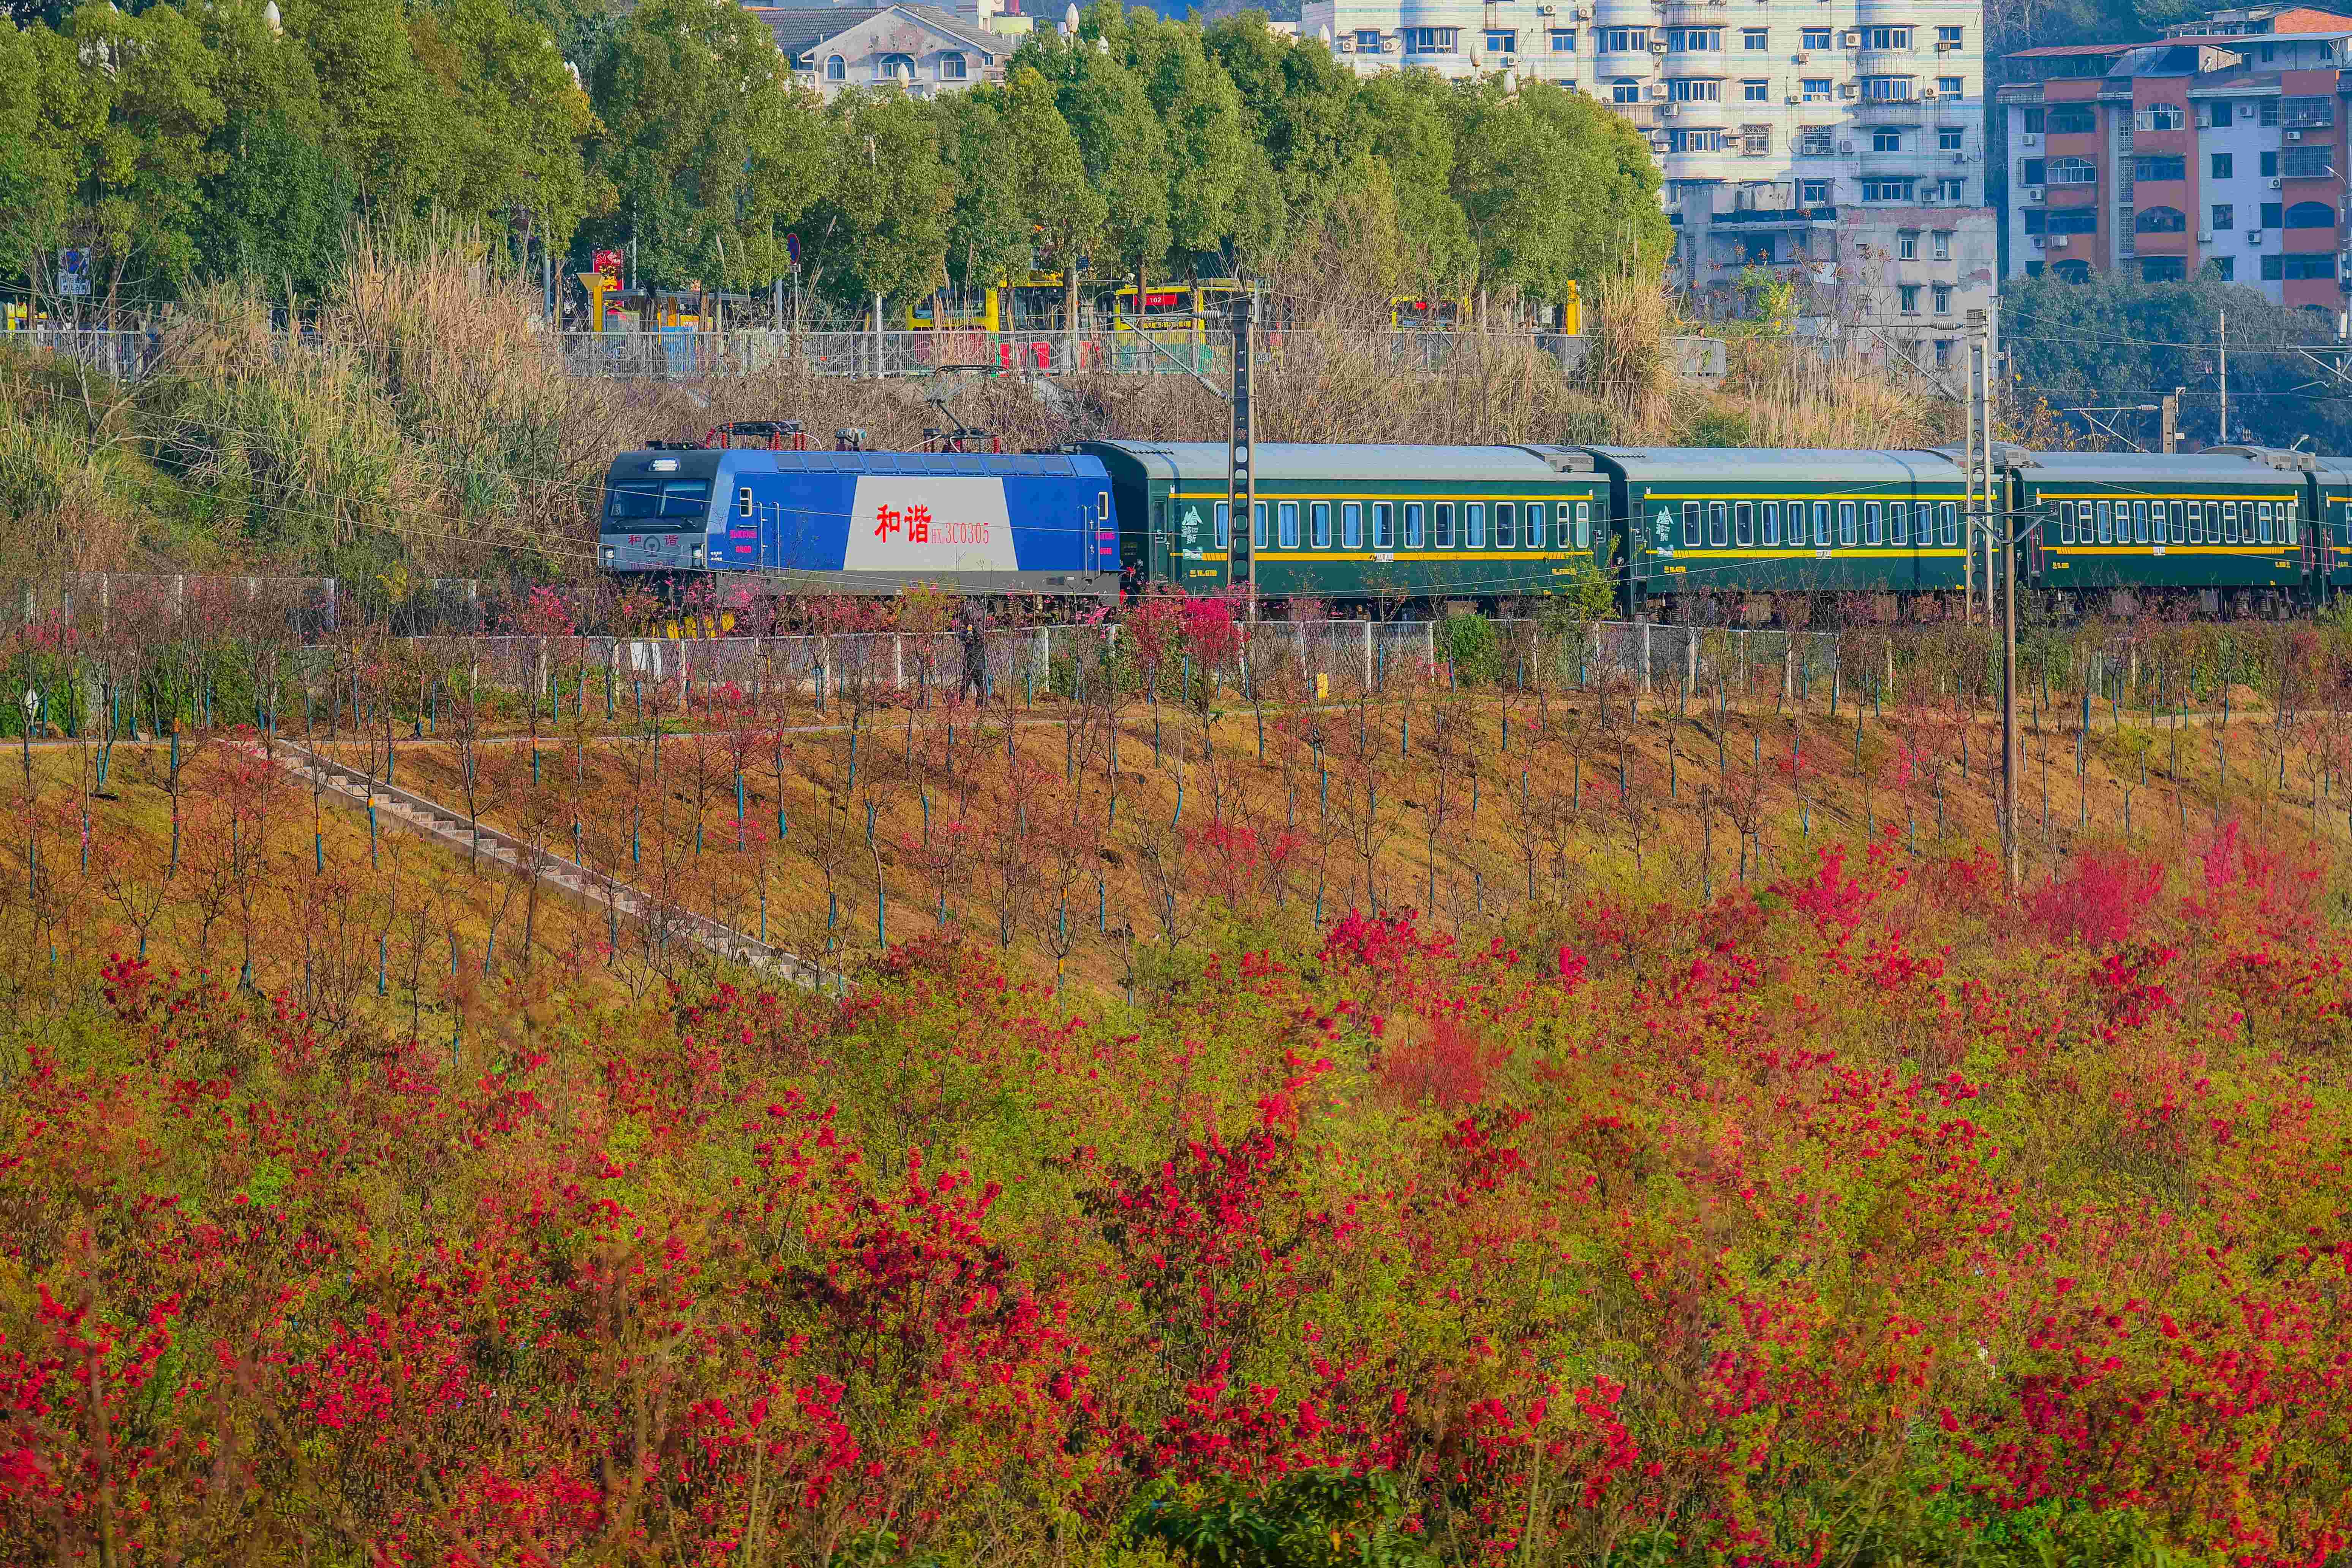 时下正值樱花盛开期，一辆绿皮火车穿行在樱花丛中。（摄影： 陈宗武）